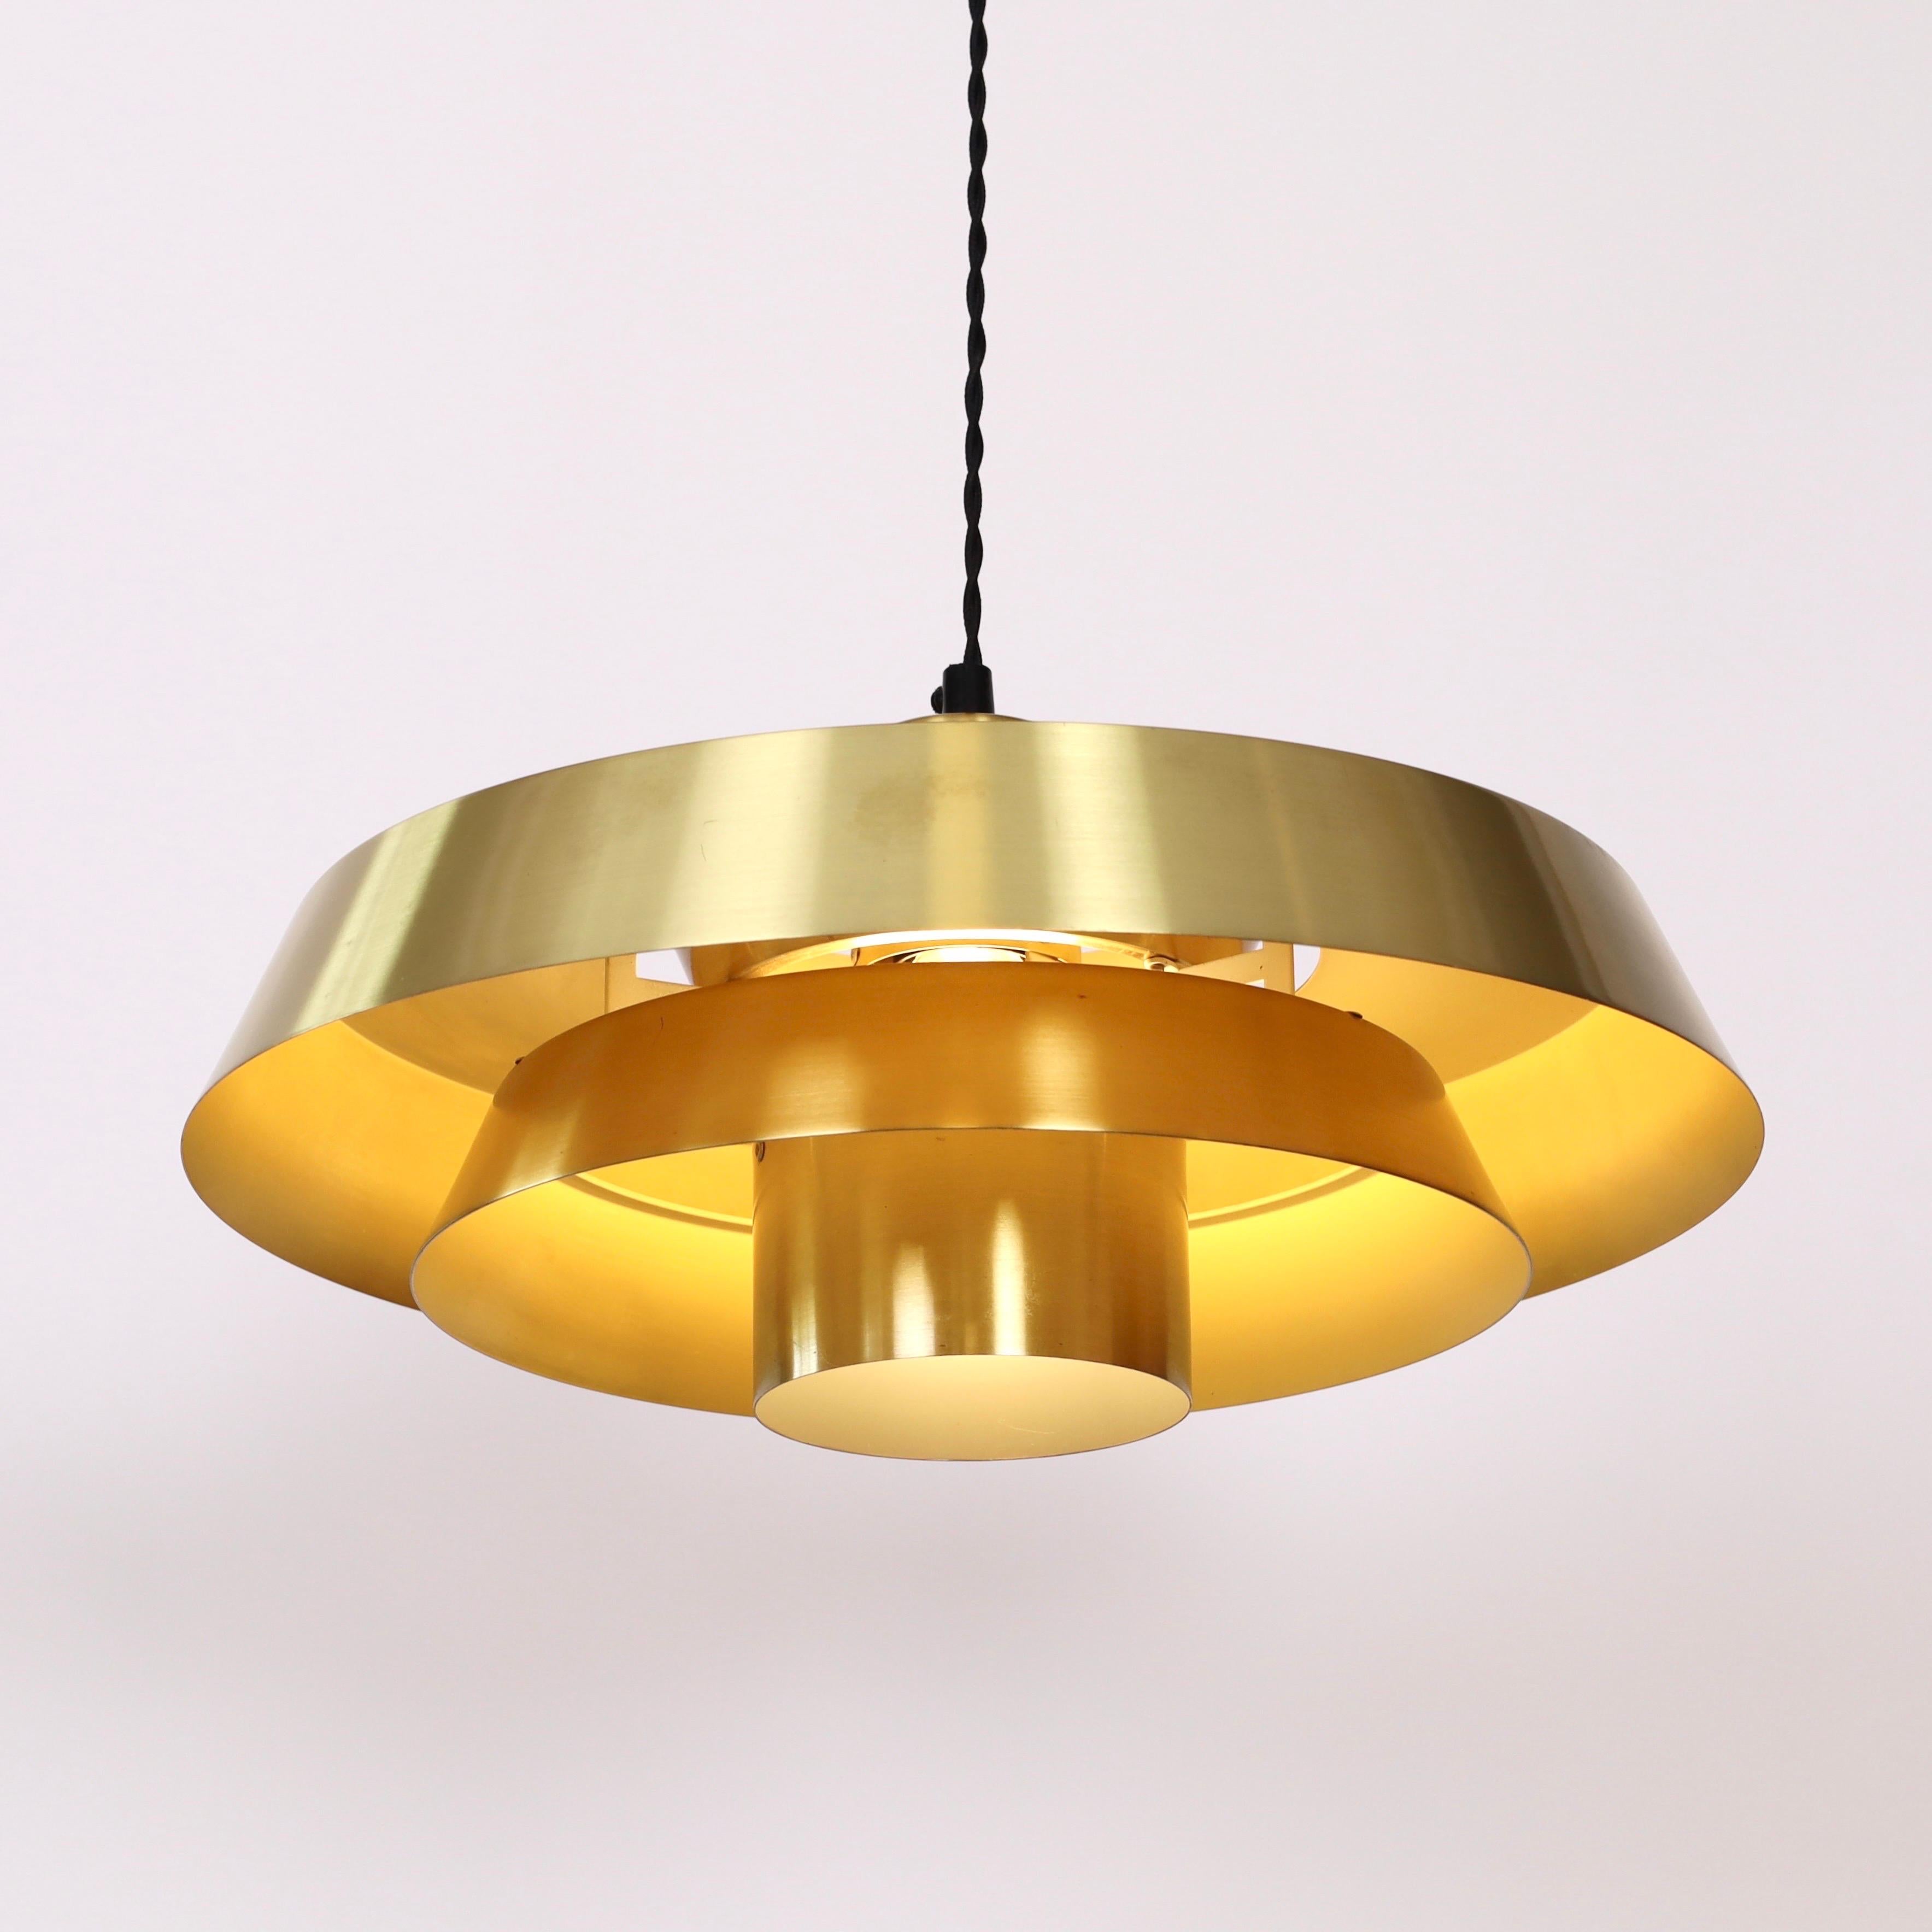 Mid-20th Century Brass Nova Pendant Light by Jo Hammerborg for Fog & Morup, 1960s, Denmark For Sale